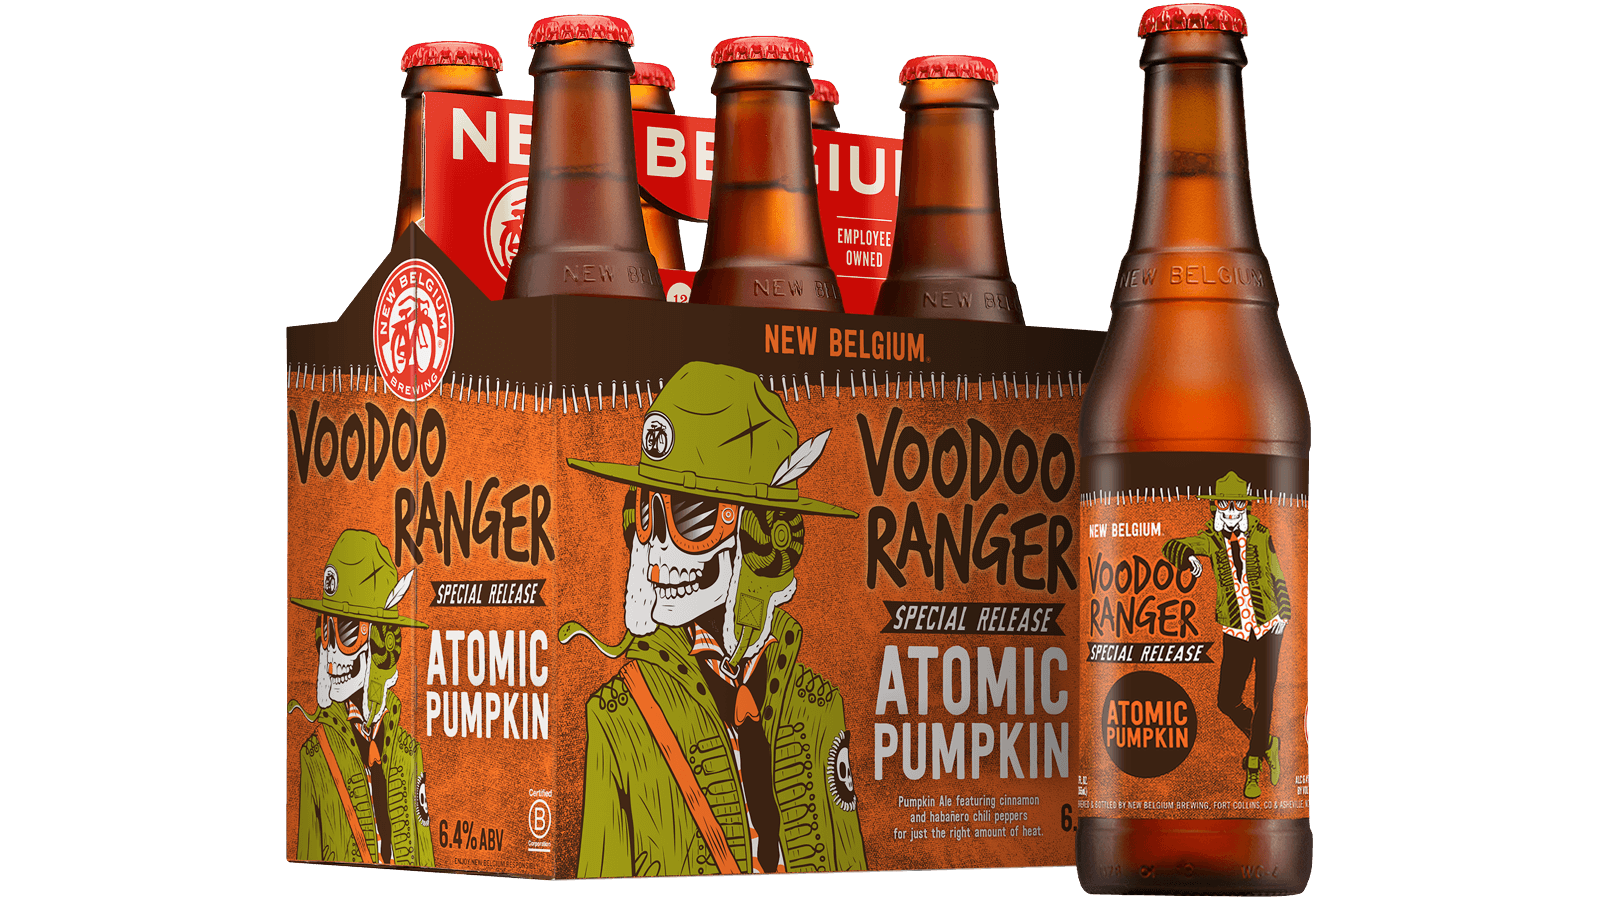 Introducing New Belgium Voodoo Ranger Atomic Pumpkin Ale